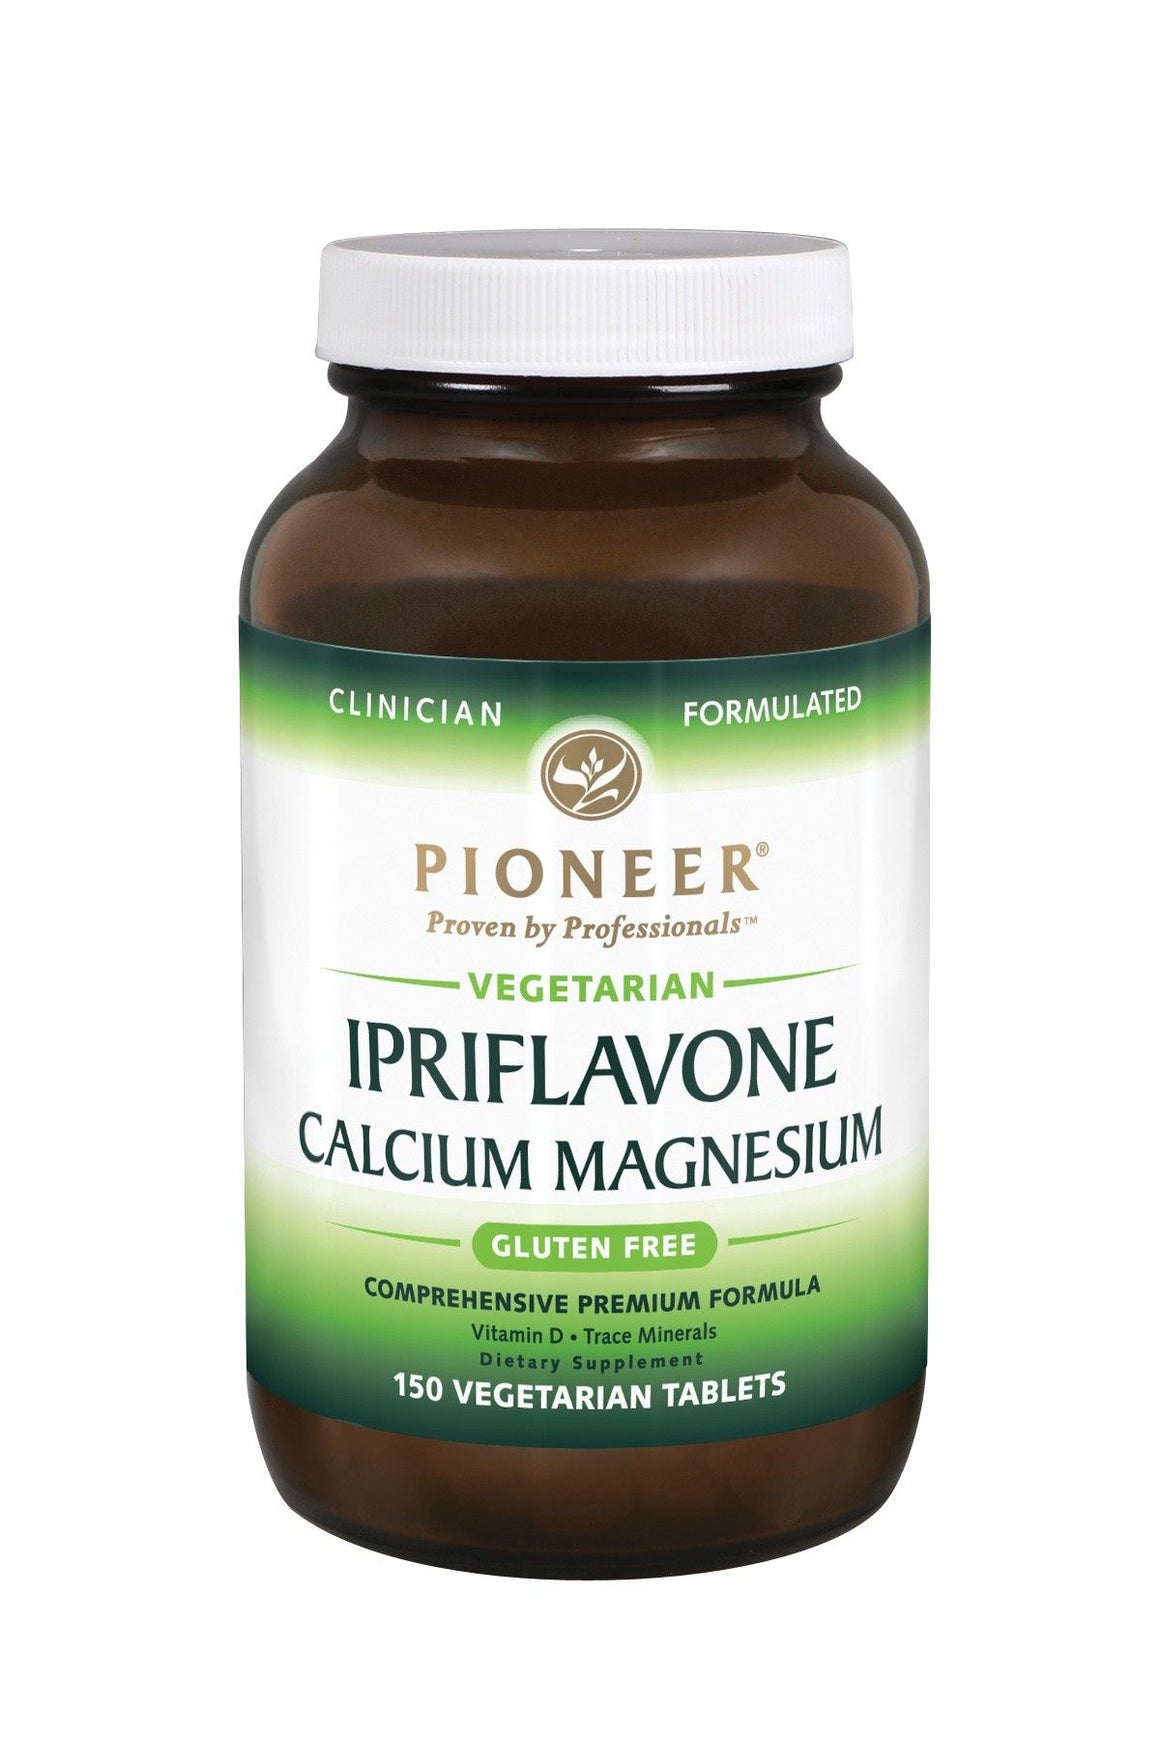 A bottle of Pioneer Ipriflavone Calcium Magnesium